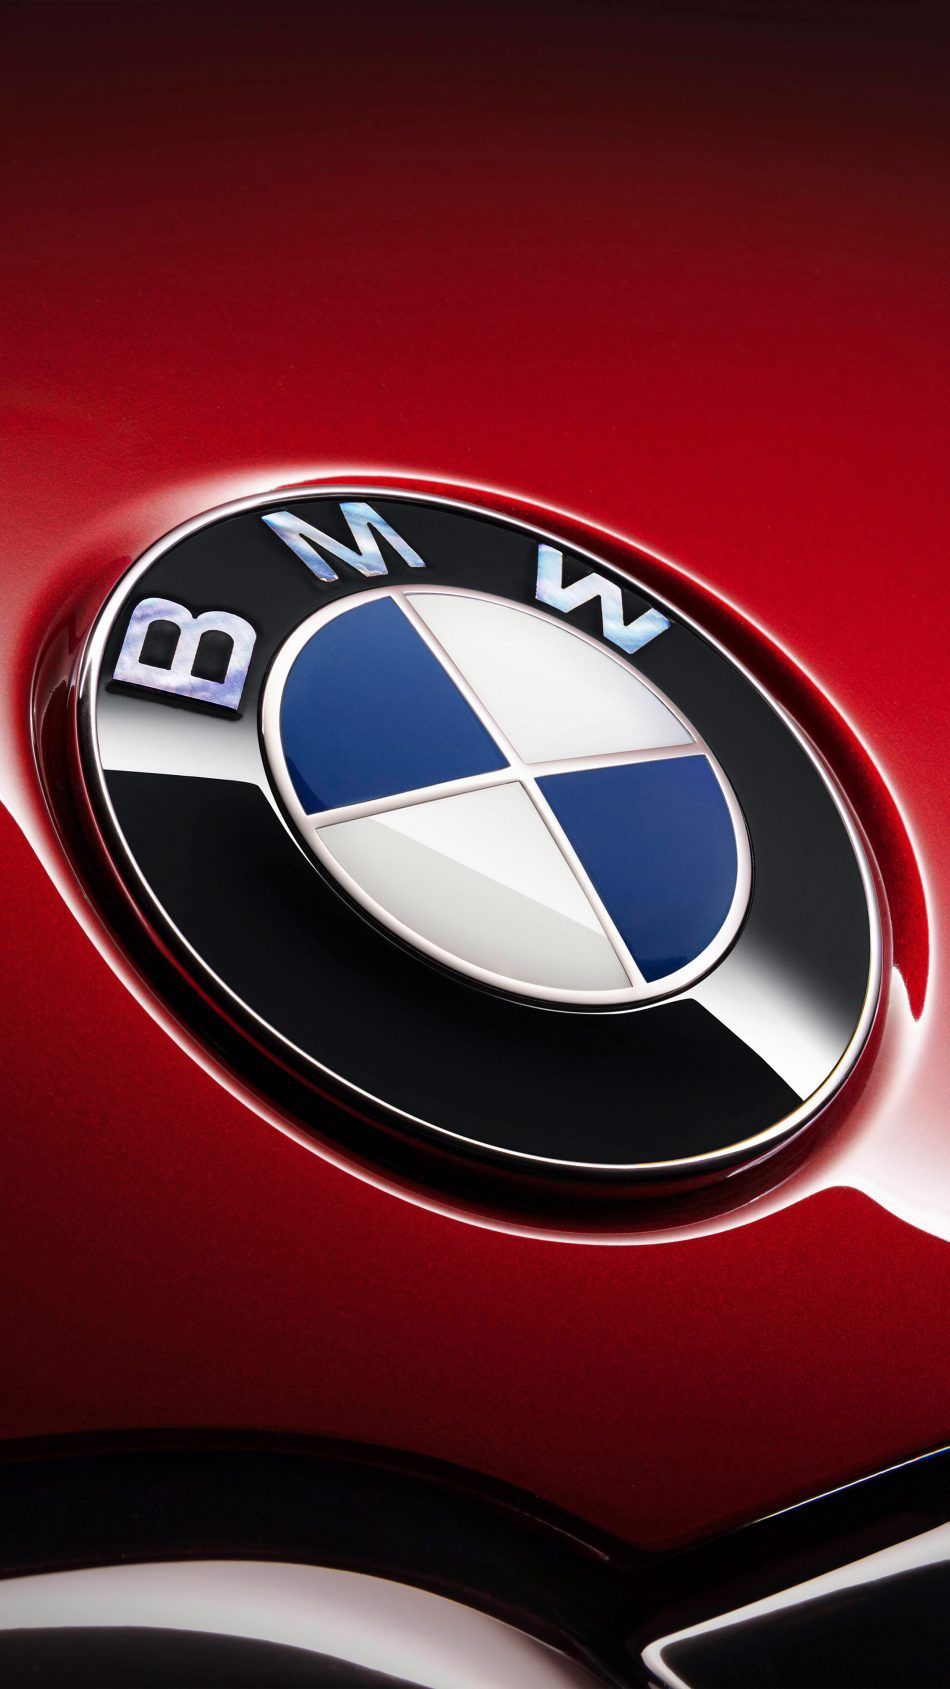 BMW 7 Series Logo 4K Ultra HD Mobile Wallpaper. Bmw 7 series, Bmw wallpaper, Bmw